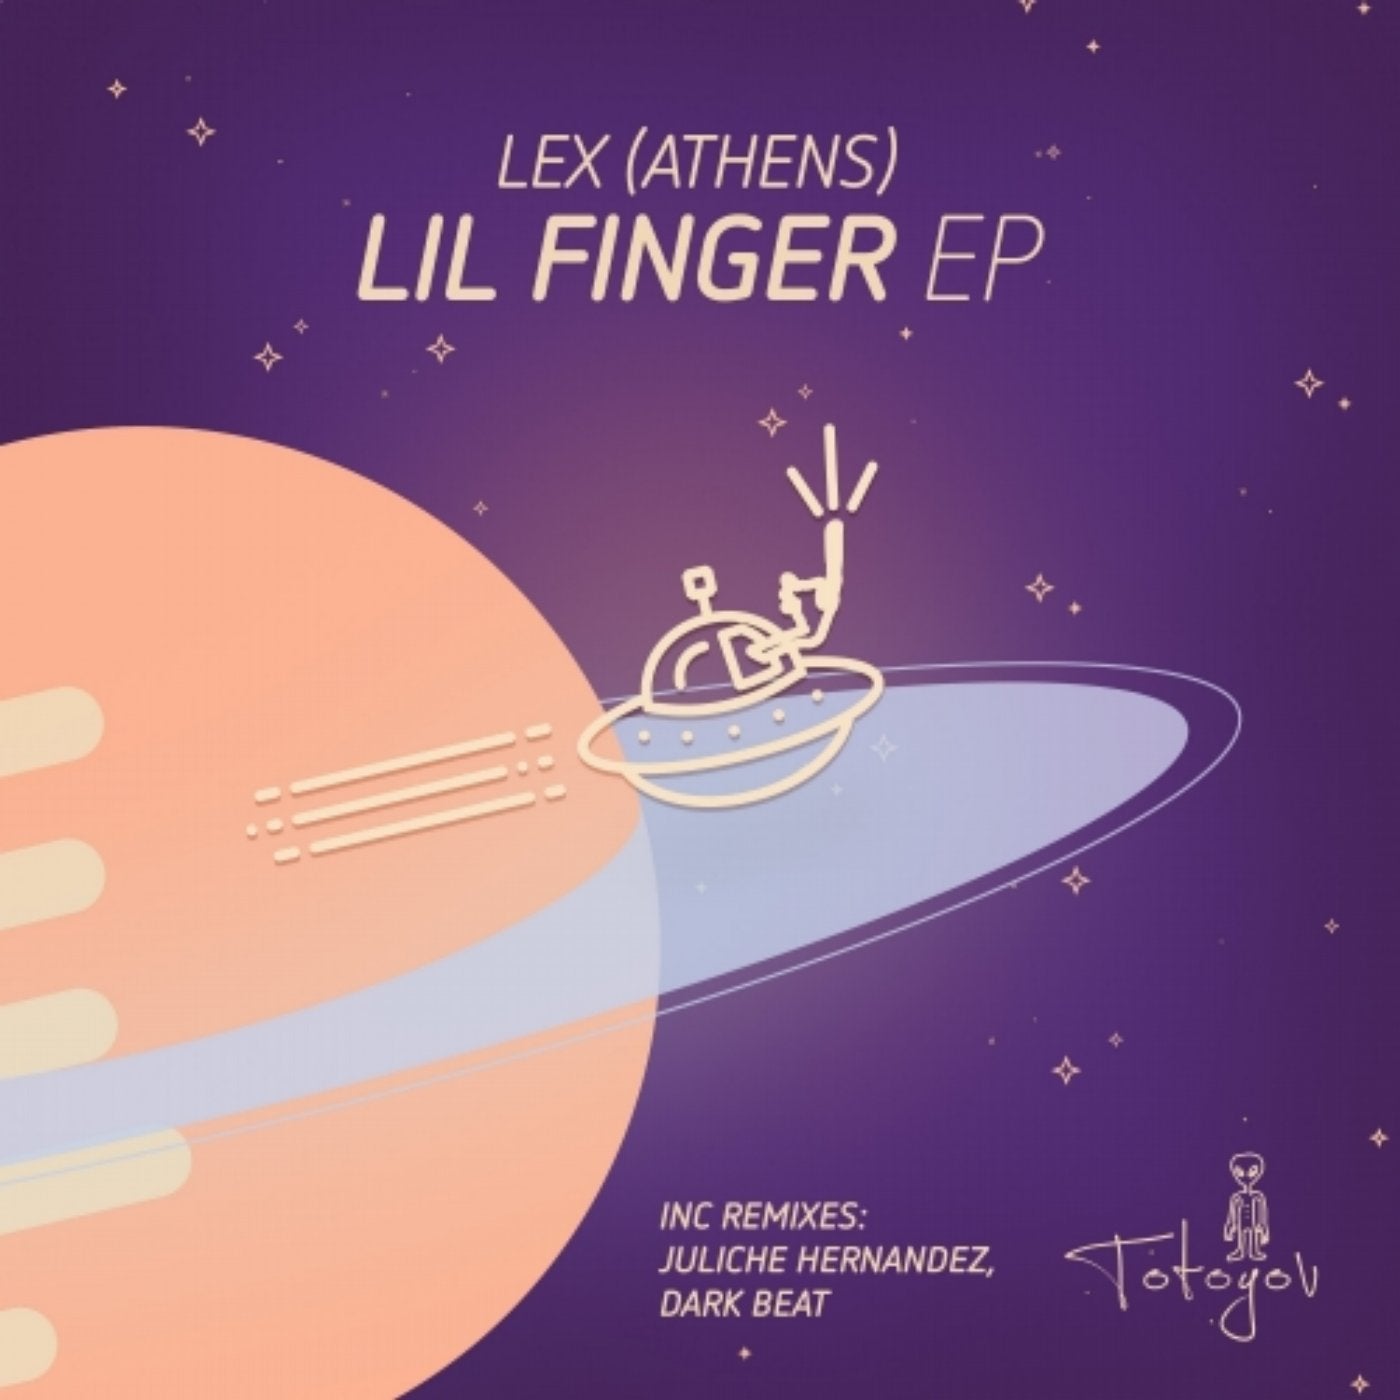 Lil Finger EP